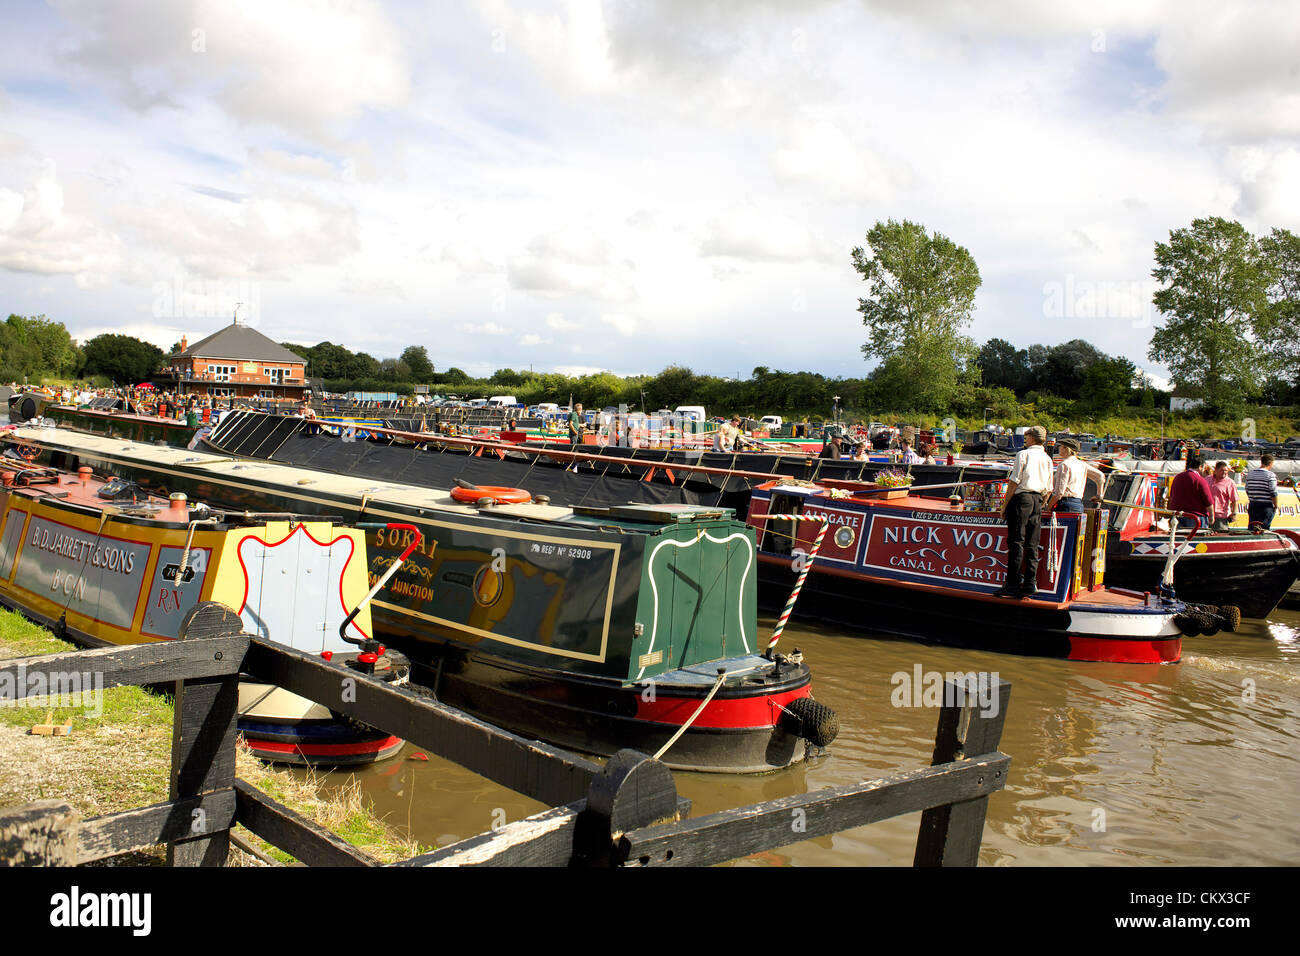 Recueillir des bateaux sur le Canal de Coventry pour la collecte 2012 Alvecote bateau historique, août vacances de banque, 25 août 2012, Alvecote Alvecote, Marina, près de Tamworth, Staffordshire, Angleterre, Royaume-Uni, Banque D'Images